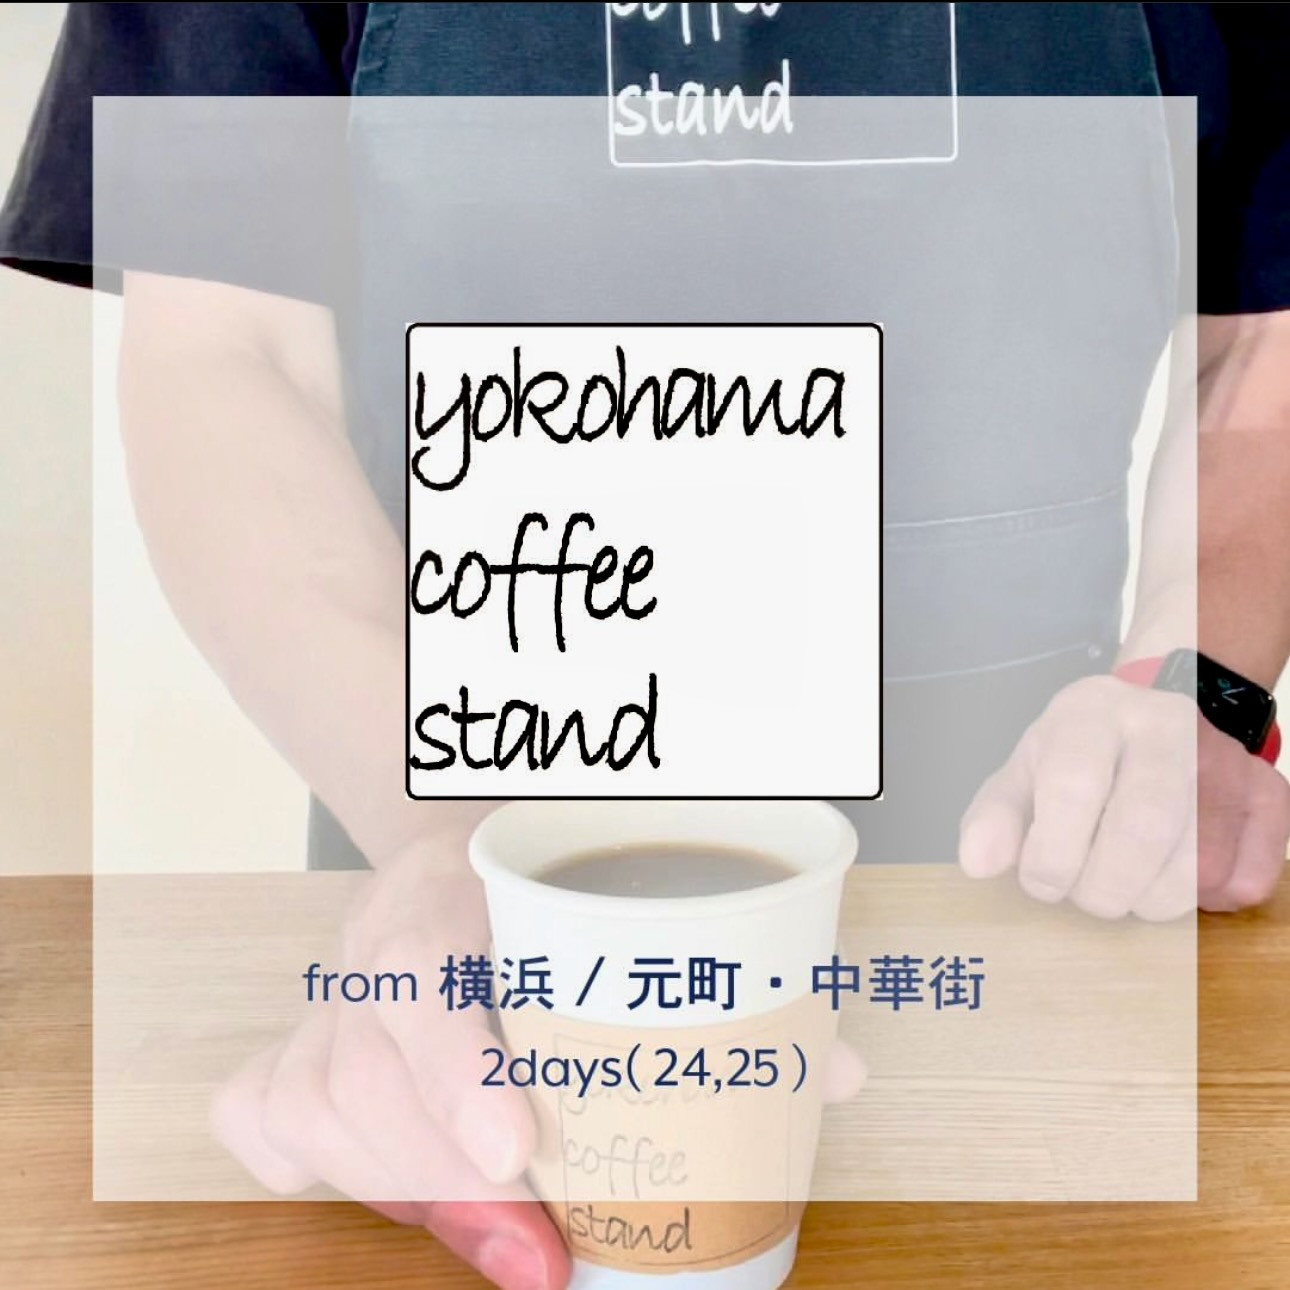 yokohama coffee festiva出店のお知らせ